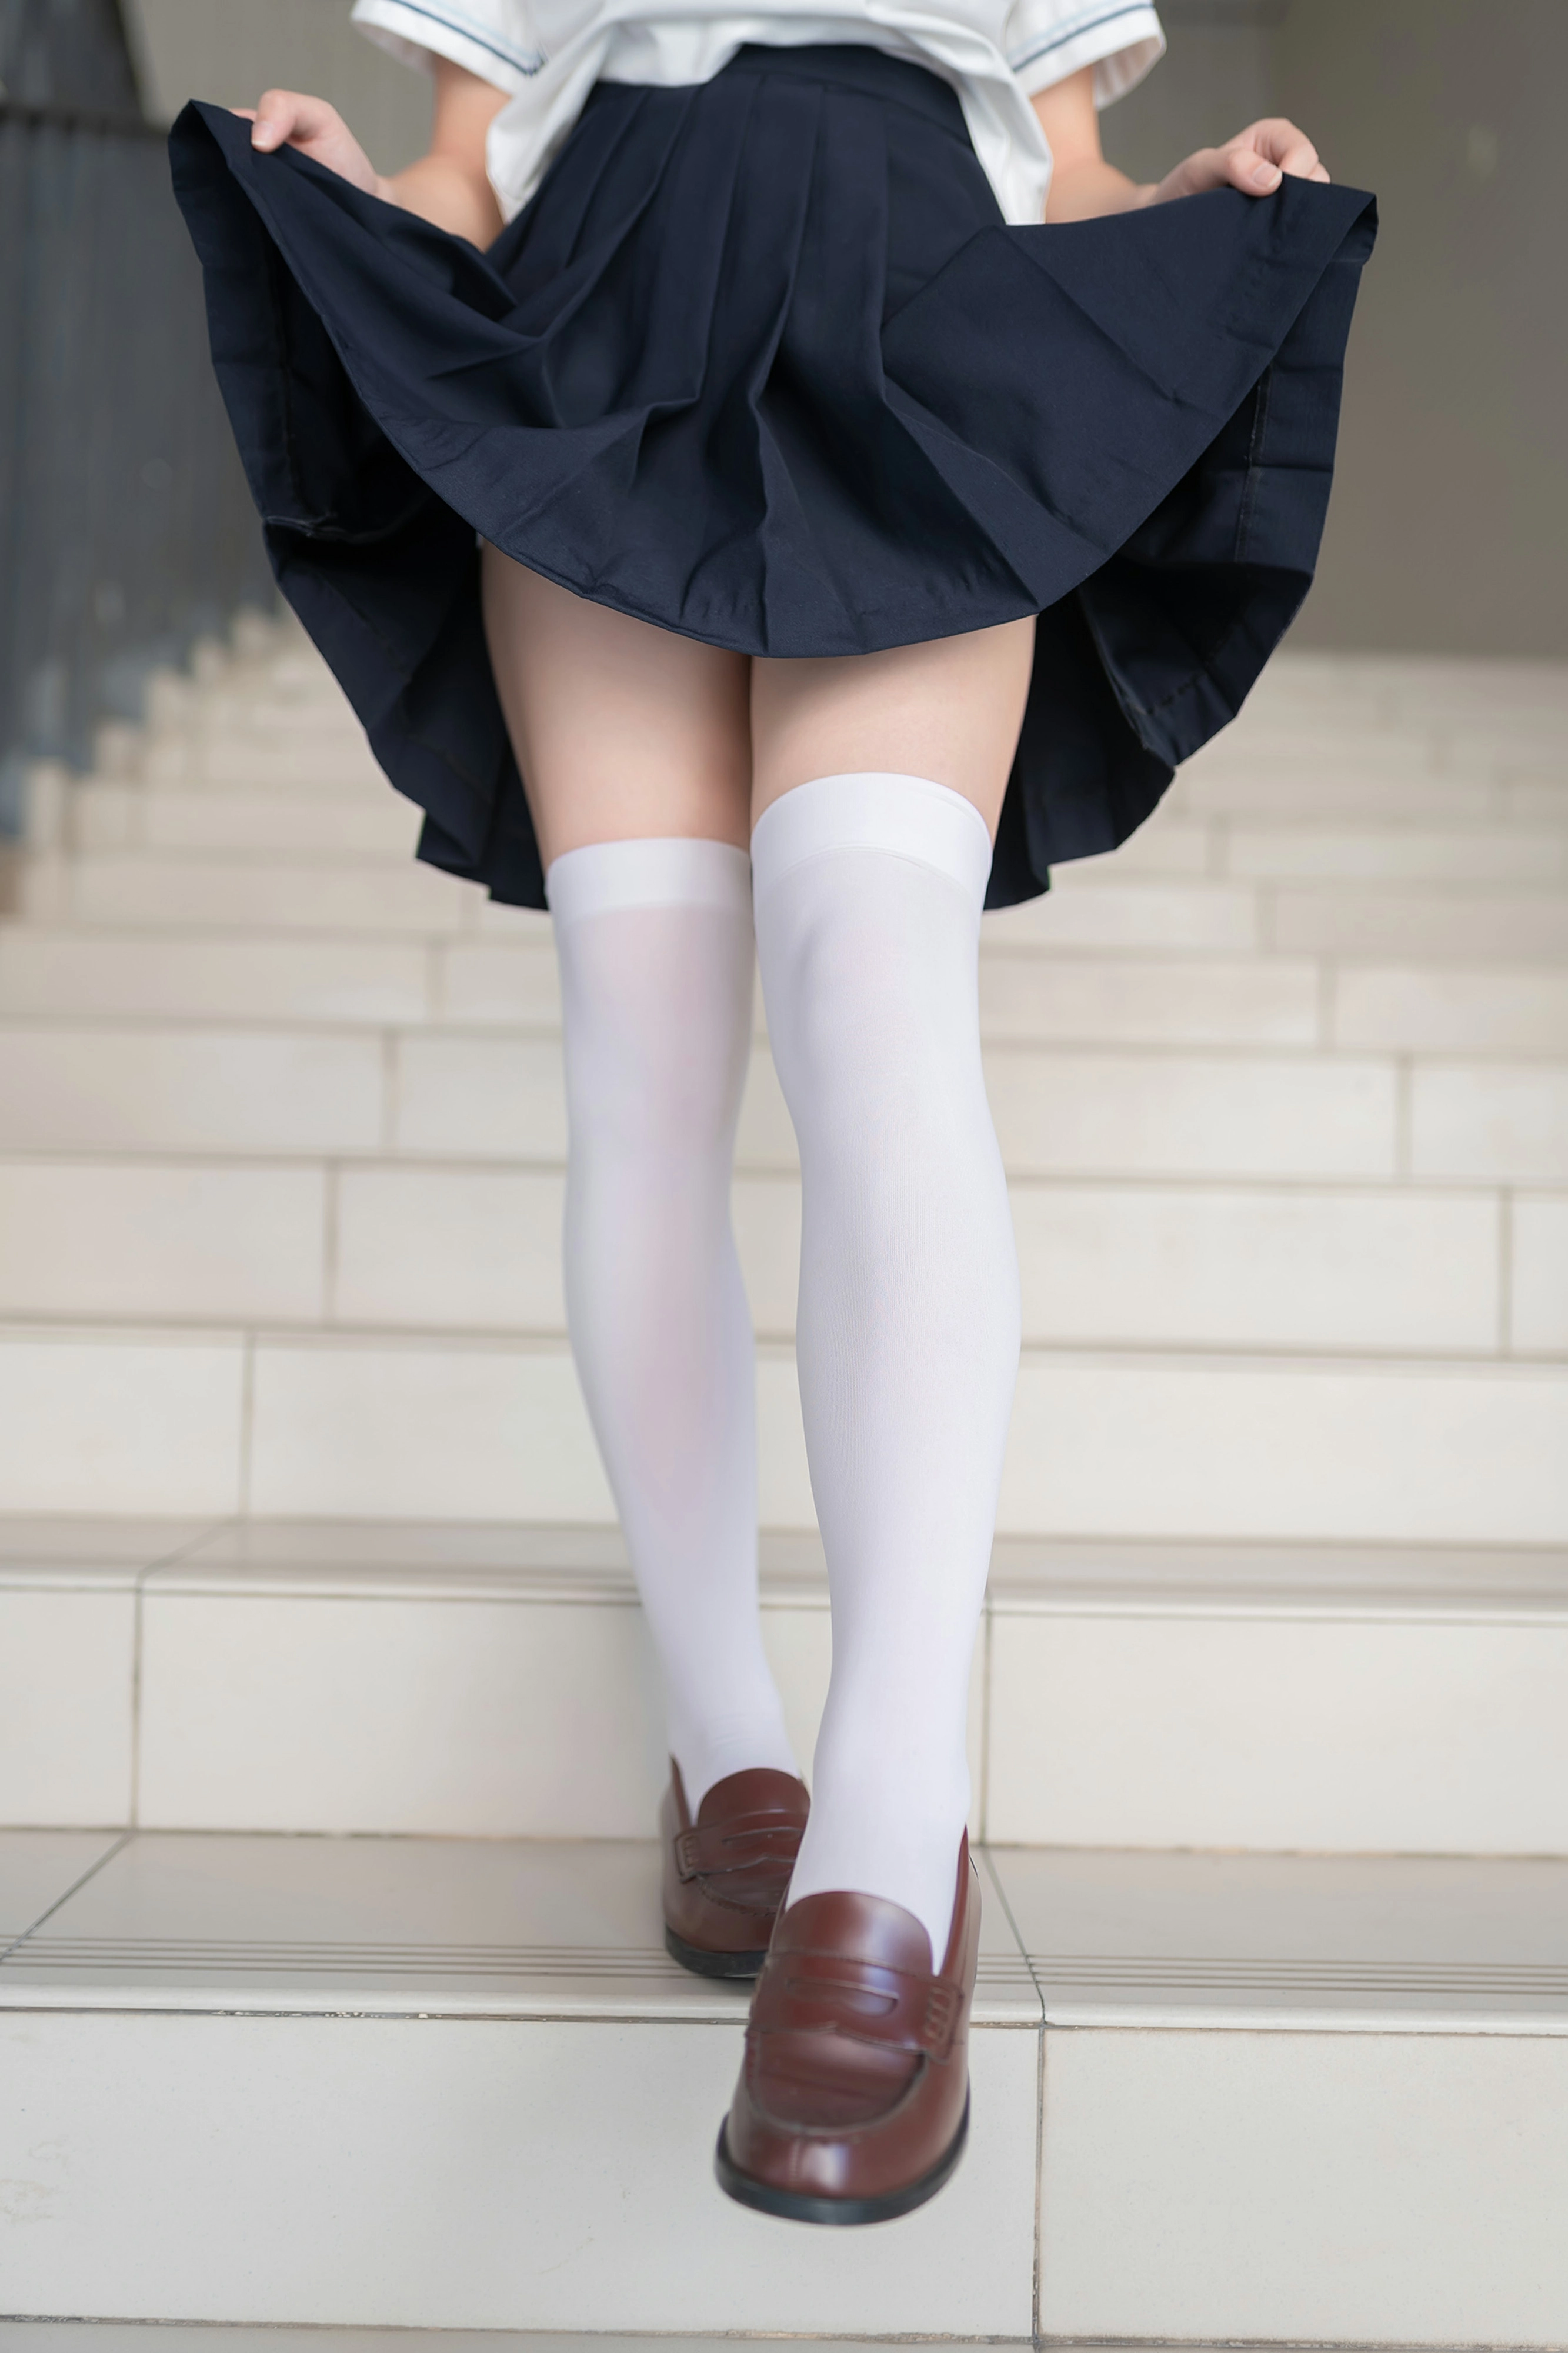 [风之领域]NO.146 小小水手少女萝莉 情趣制服与短裙加白色丝袜美腿性感私房写真集,